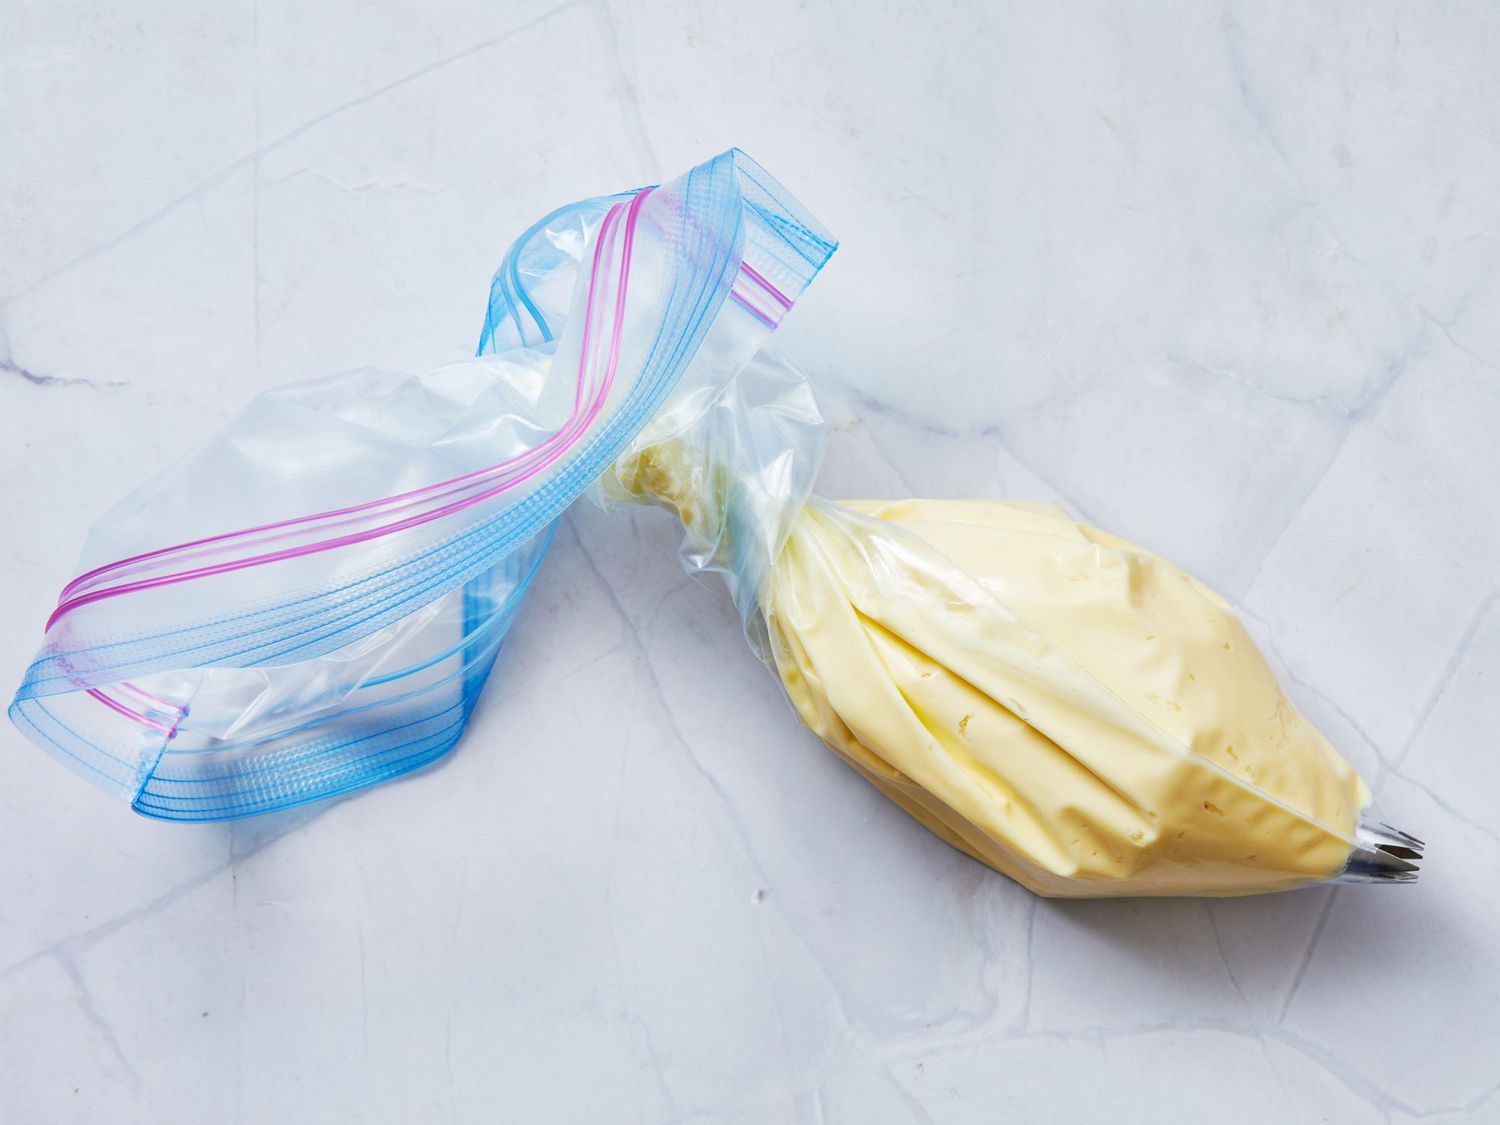 How to Wash Ziploc Bags